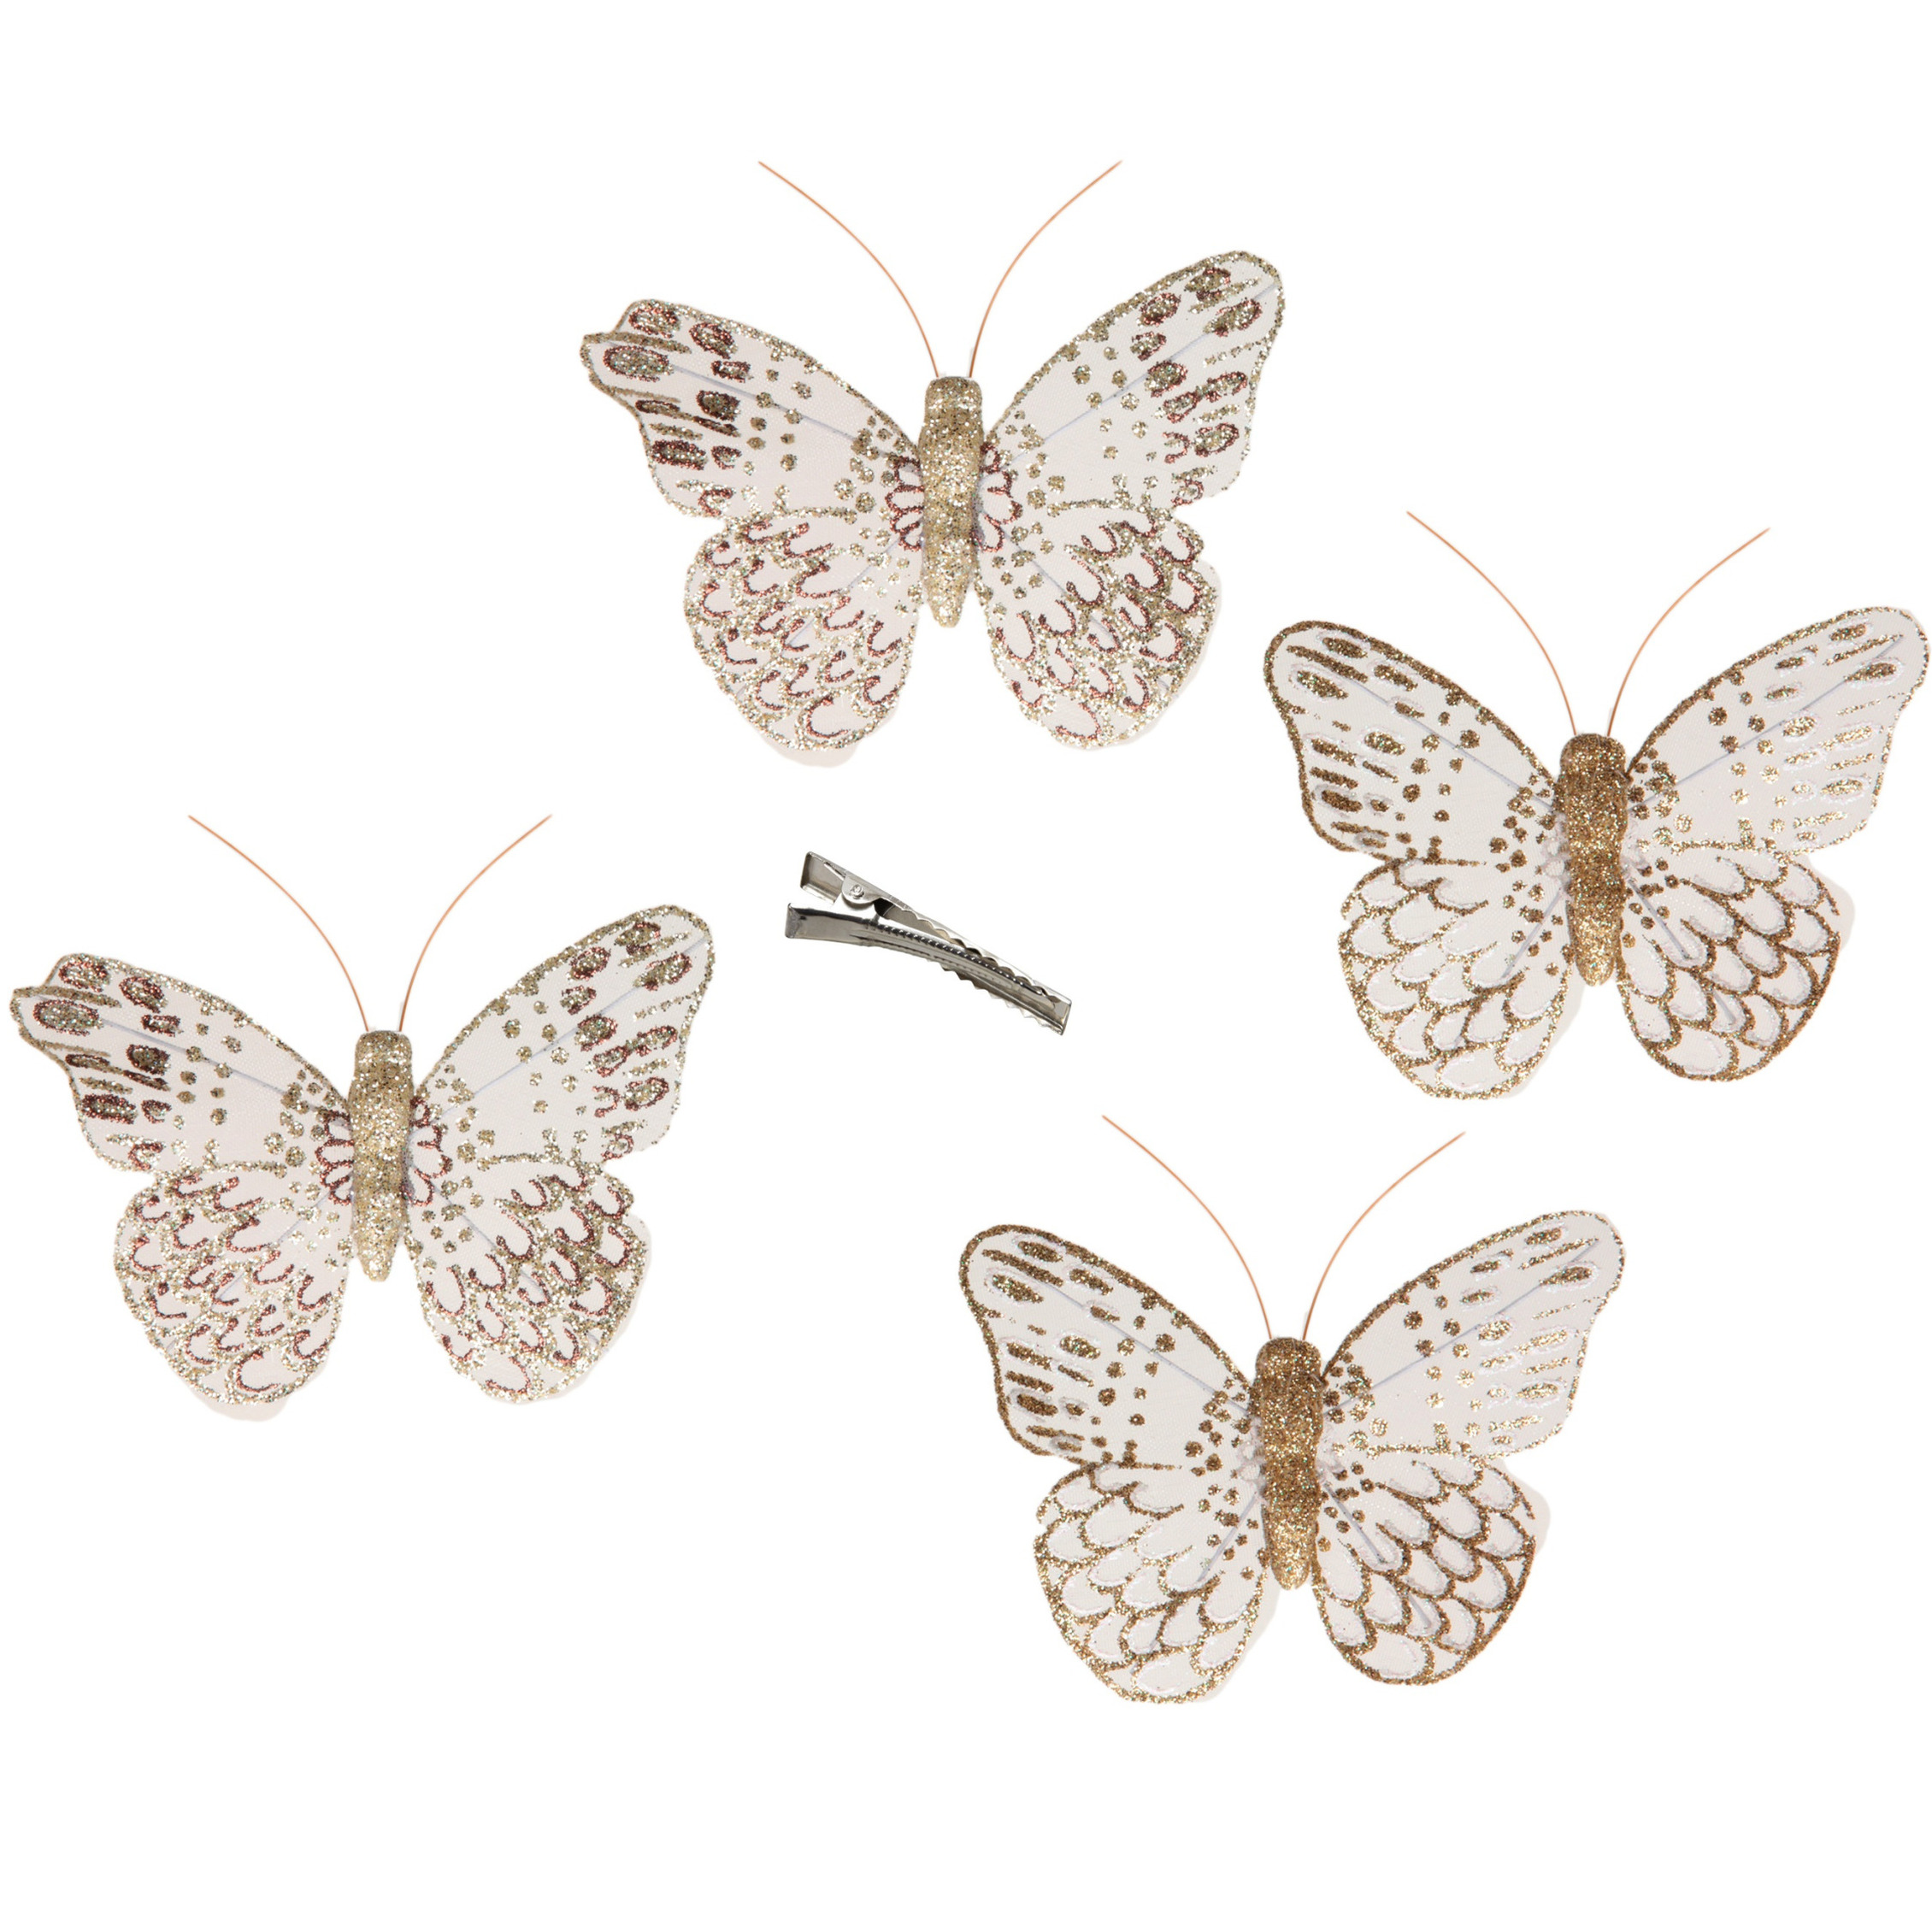 12x stuks decoratie vlinders op clip goud glitter 10 x 8 cm